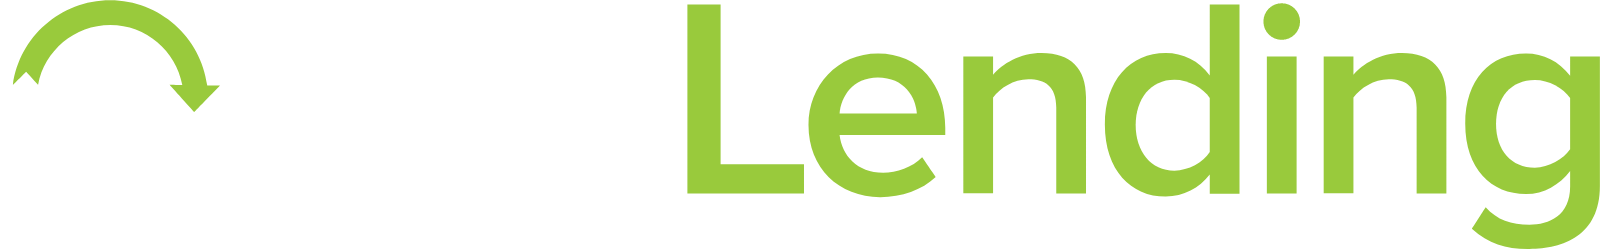 Open Lending logo large for dark backgrounds (transparent PNG)